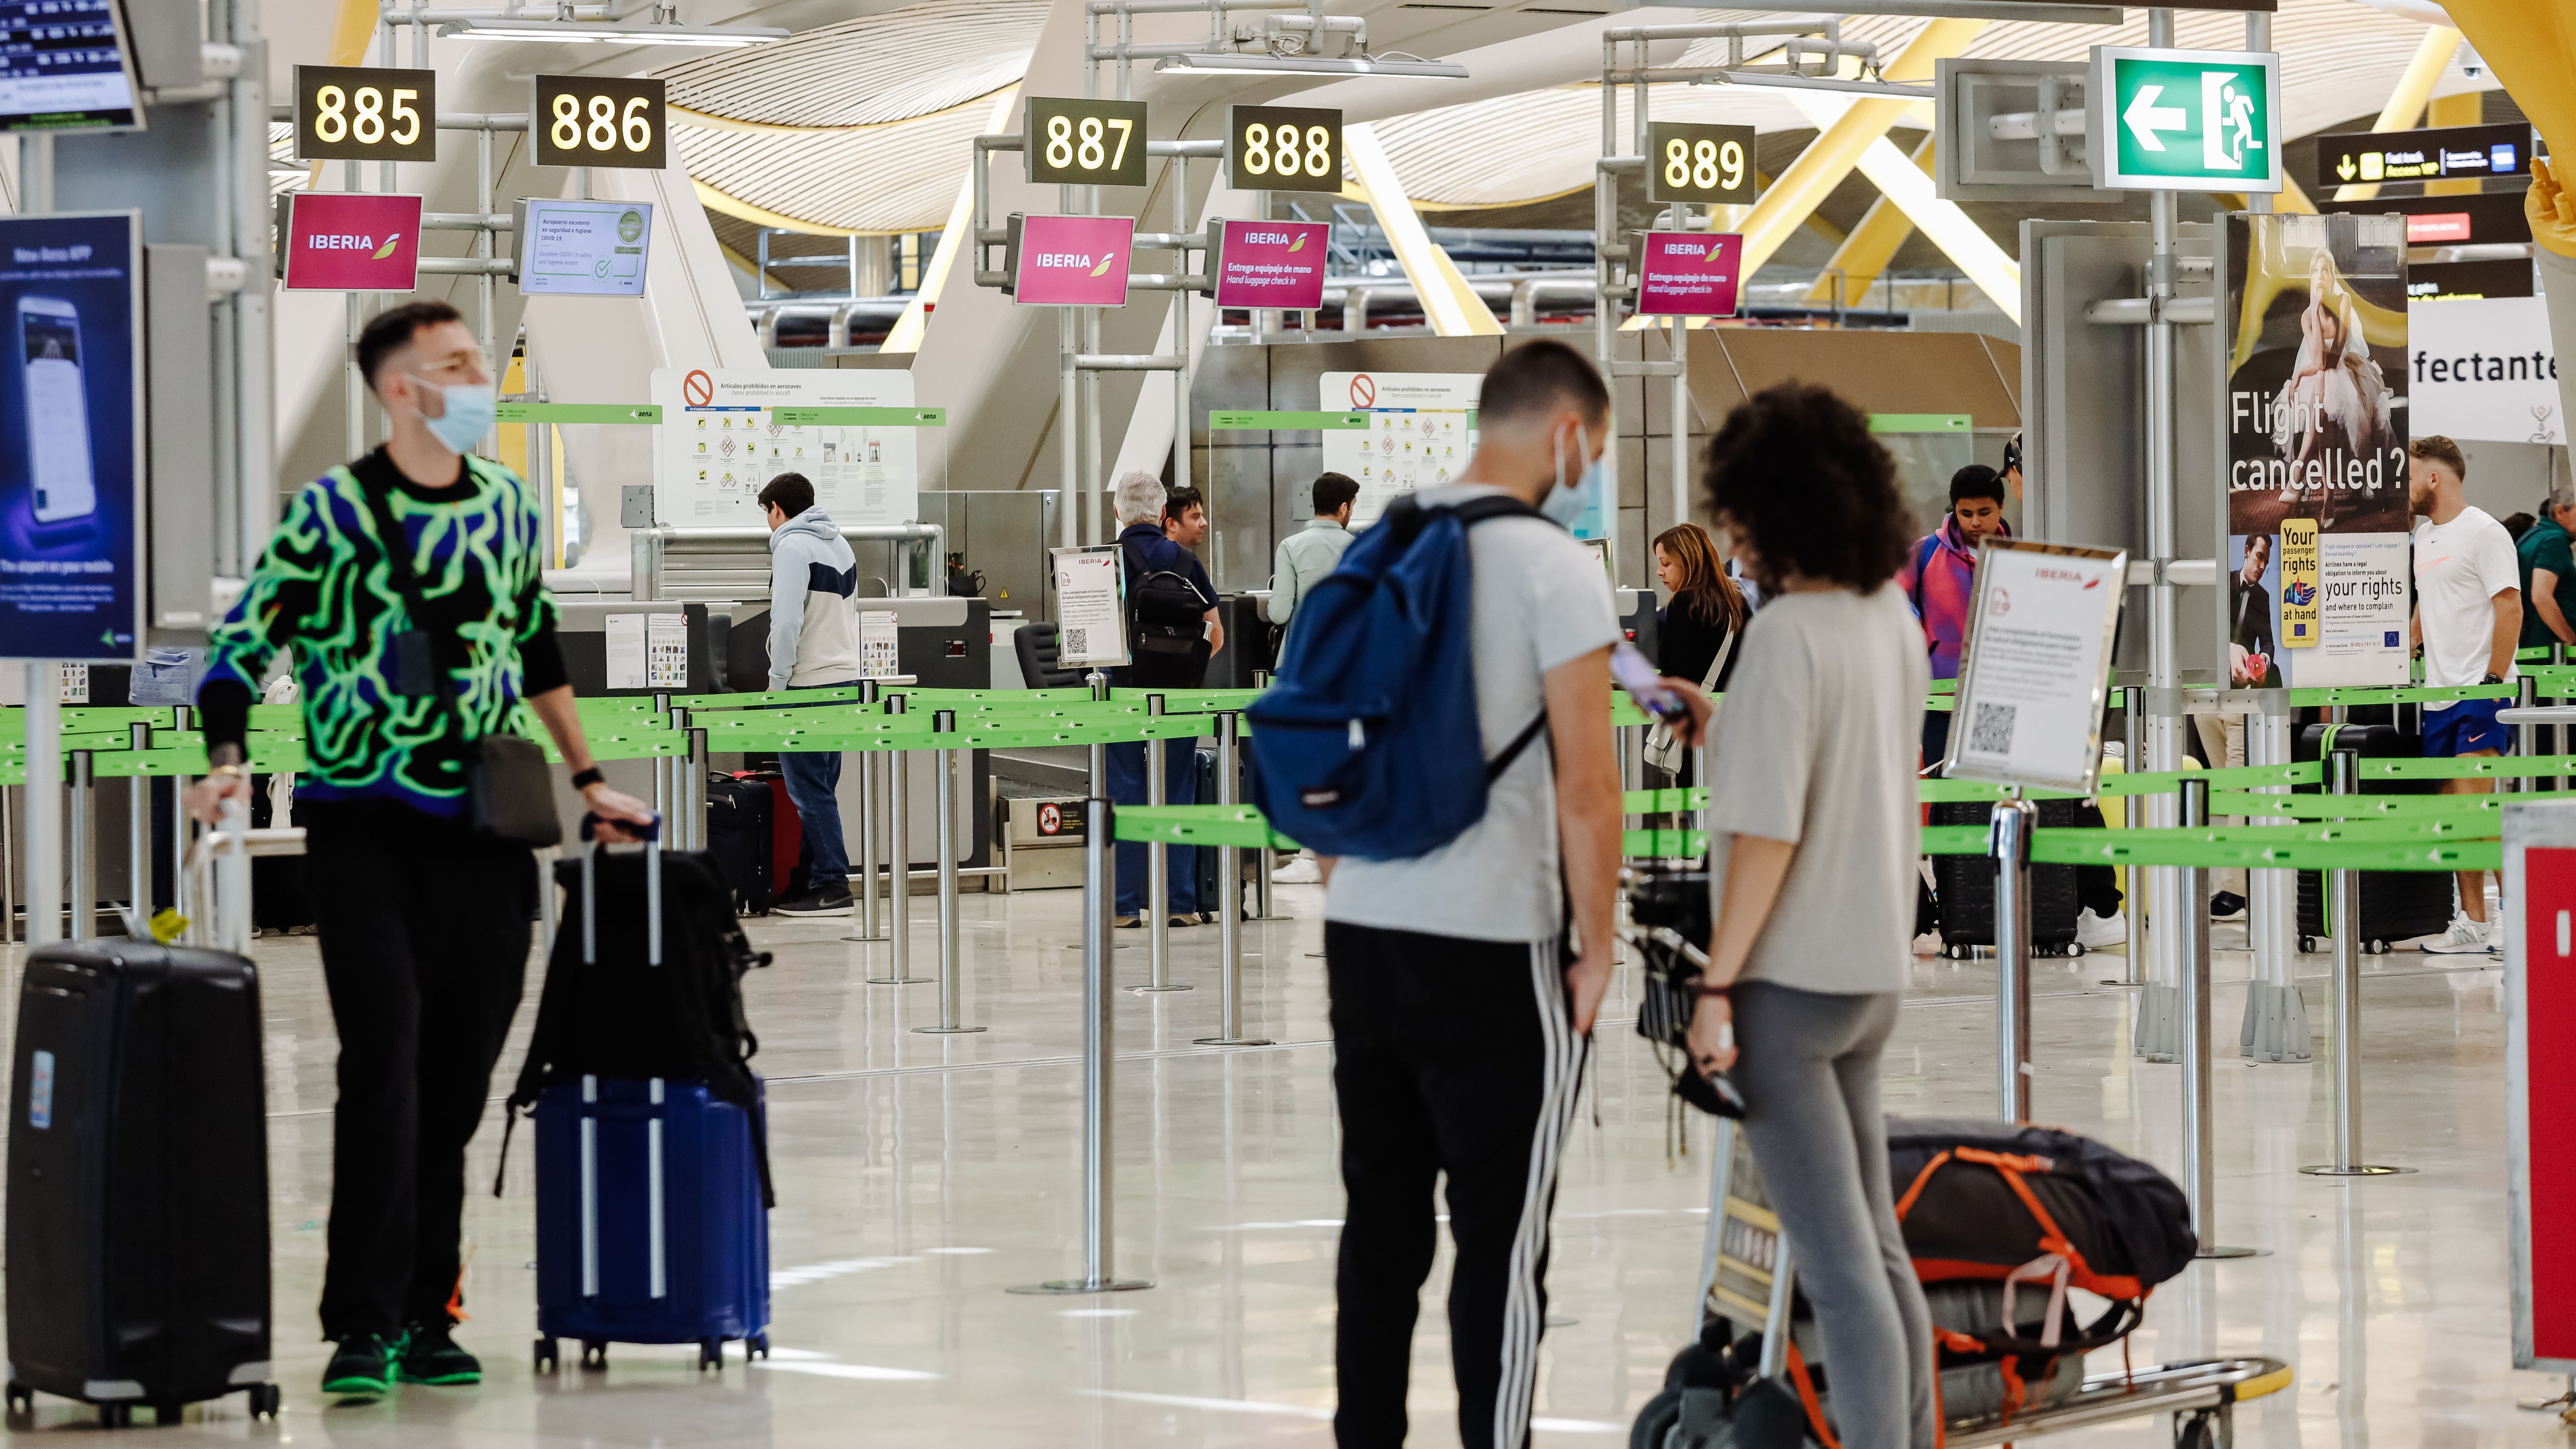 Tribunal de Vigo aprova política de bagagem de mão da Ryanair